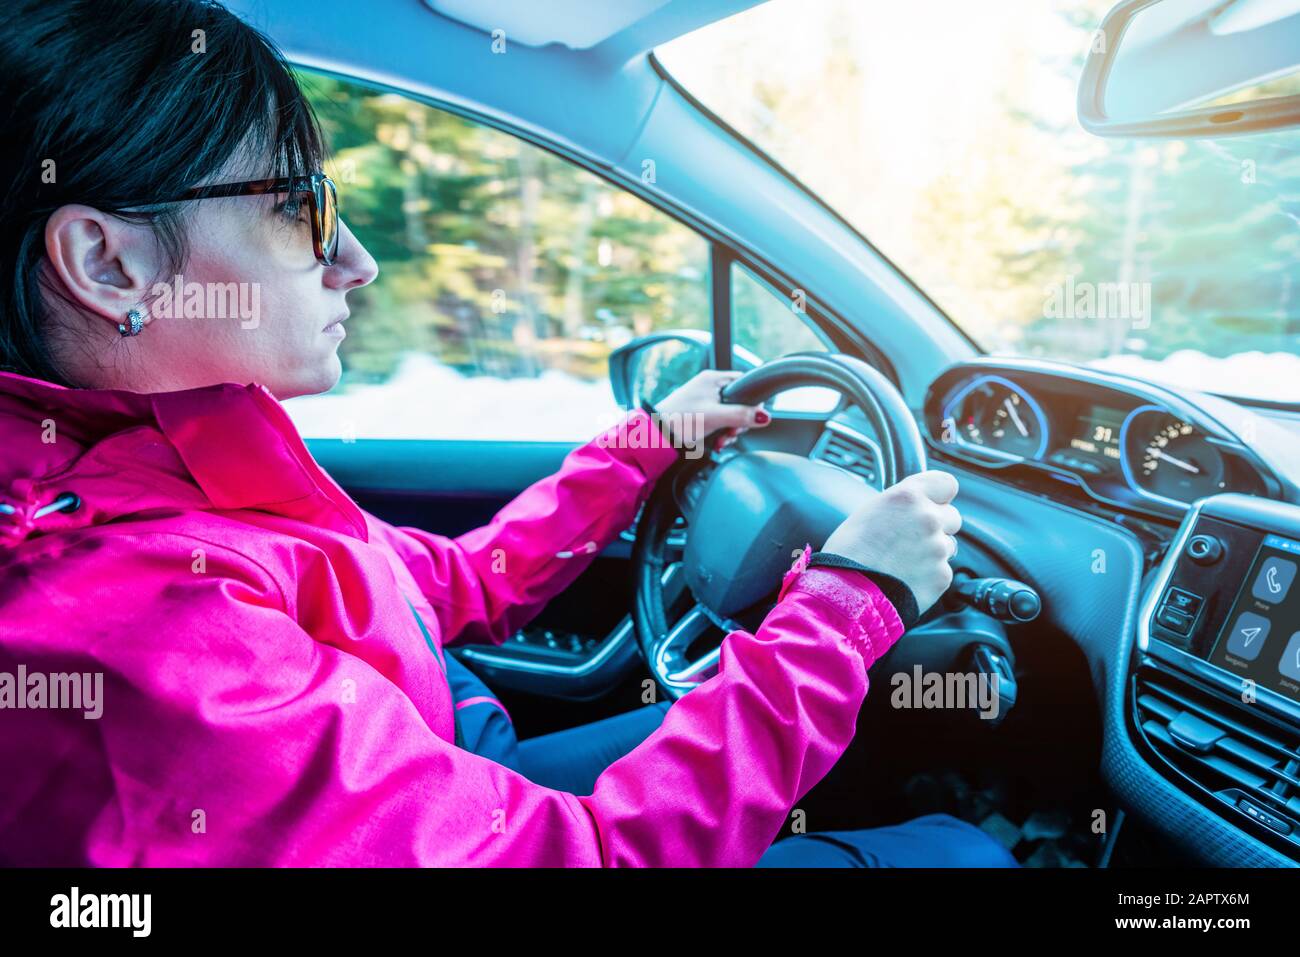 La ragazza nella giacca guida l'auto. Interni moderni. Concetto di sicurezza durante la guida invernale Foto Stock